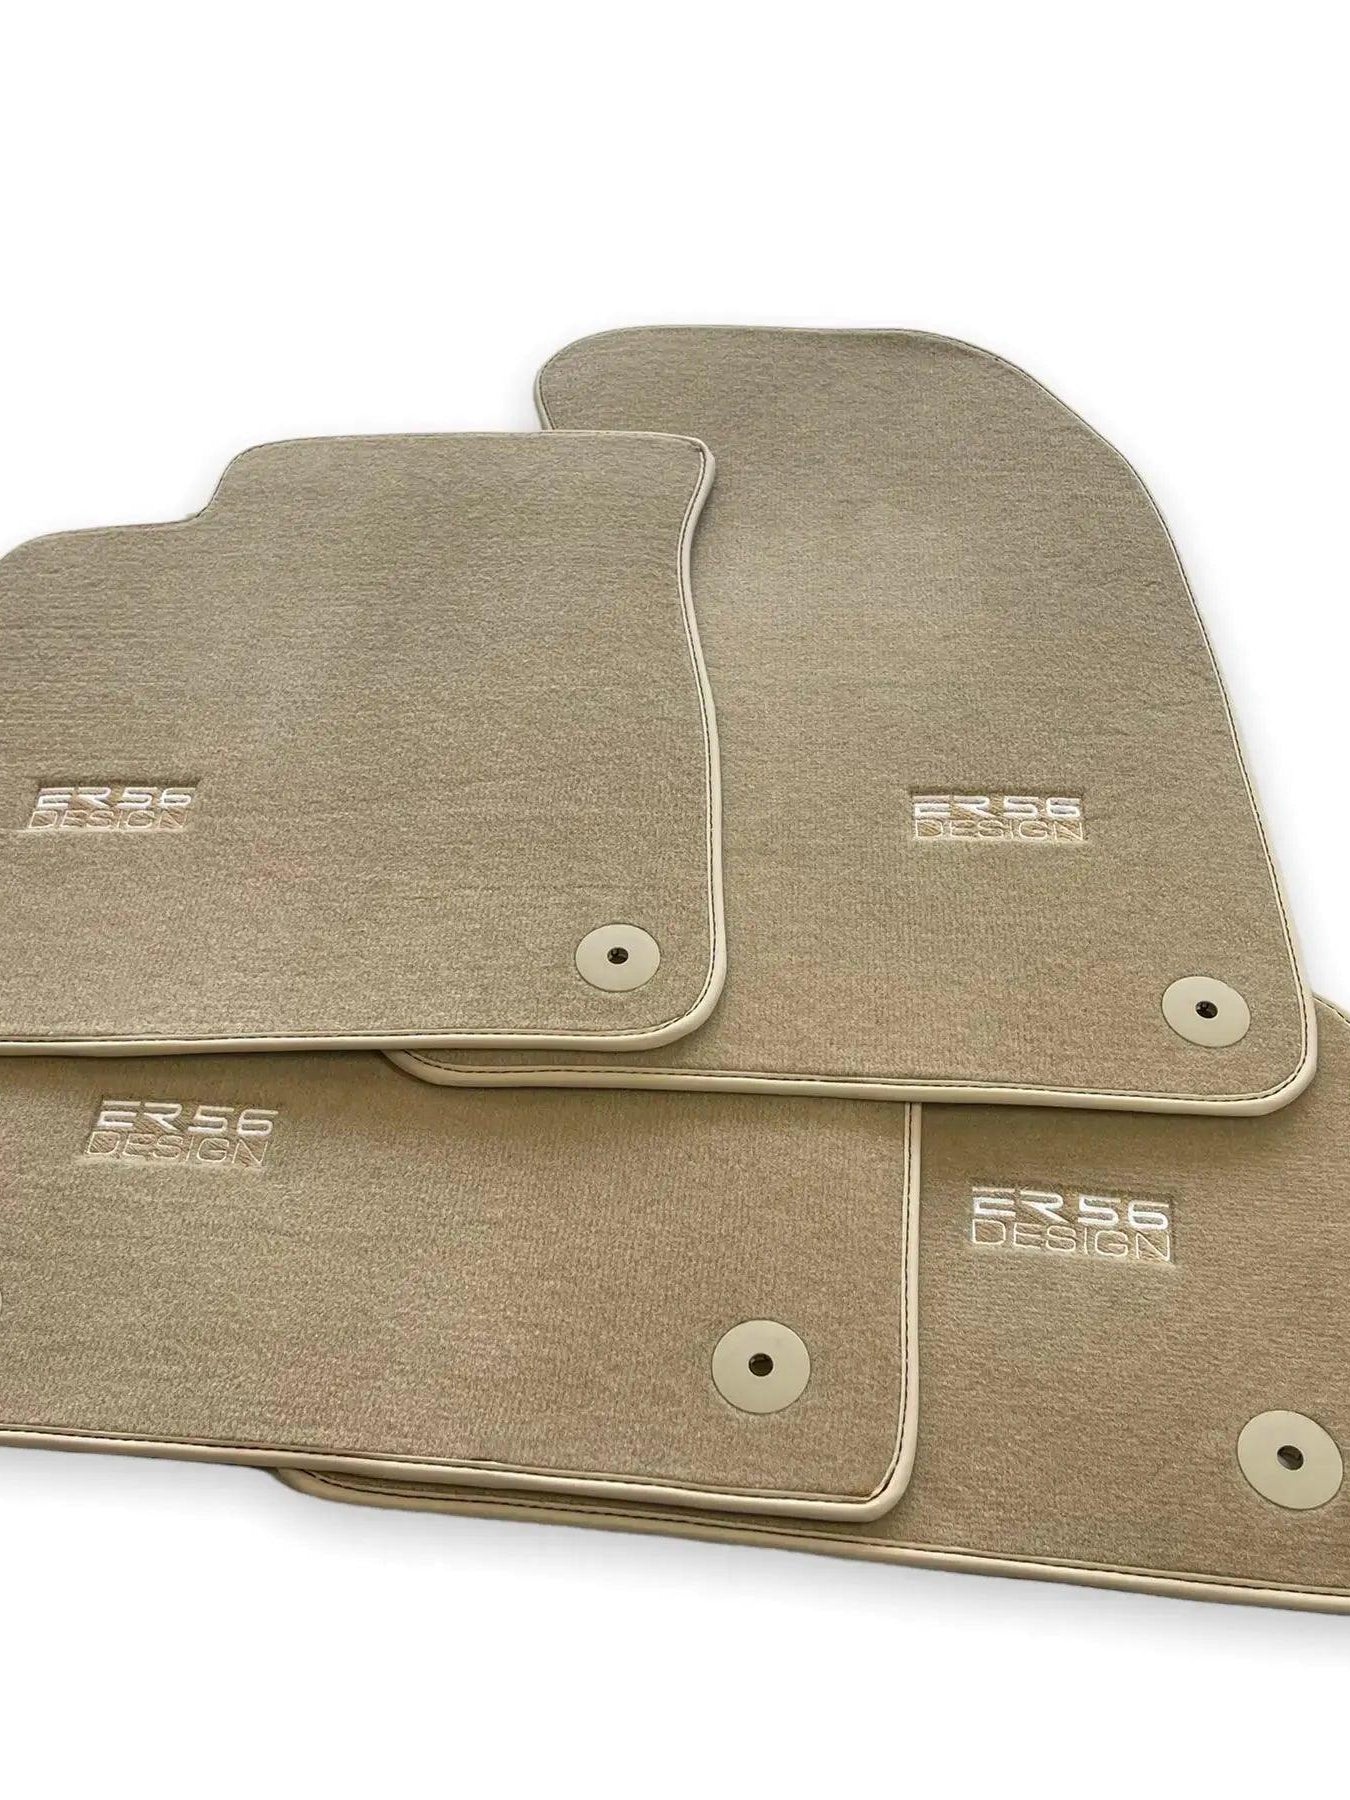 Beige Floor Mats for Audi A3 - 5-door Sportback (2013-2020) | ER56 Design - AutoWin